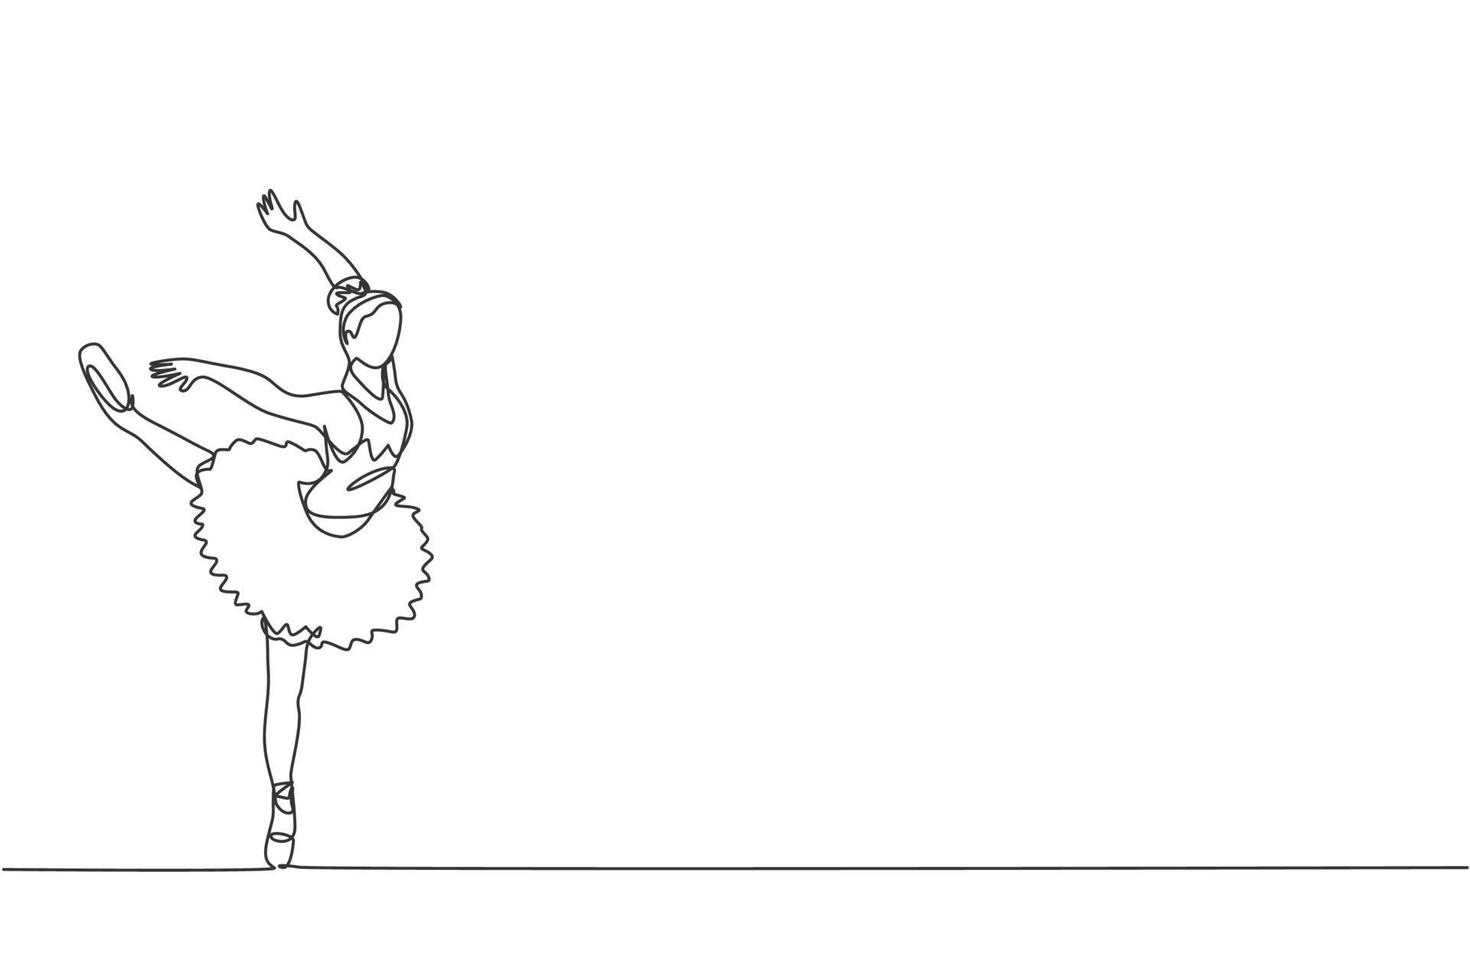 il disegno a linea continua di una giovane e graziosa ballerina ha dimostrato l'abilità di danza classica della coreografia di balletto. concetto di danza lirica. illustrazione vettoriale grafica di design alla moda di una linea di disegno